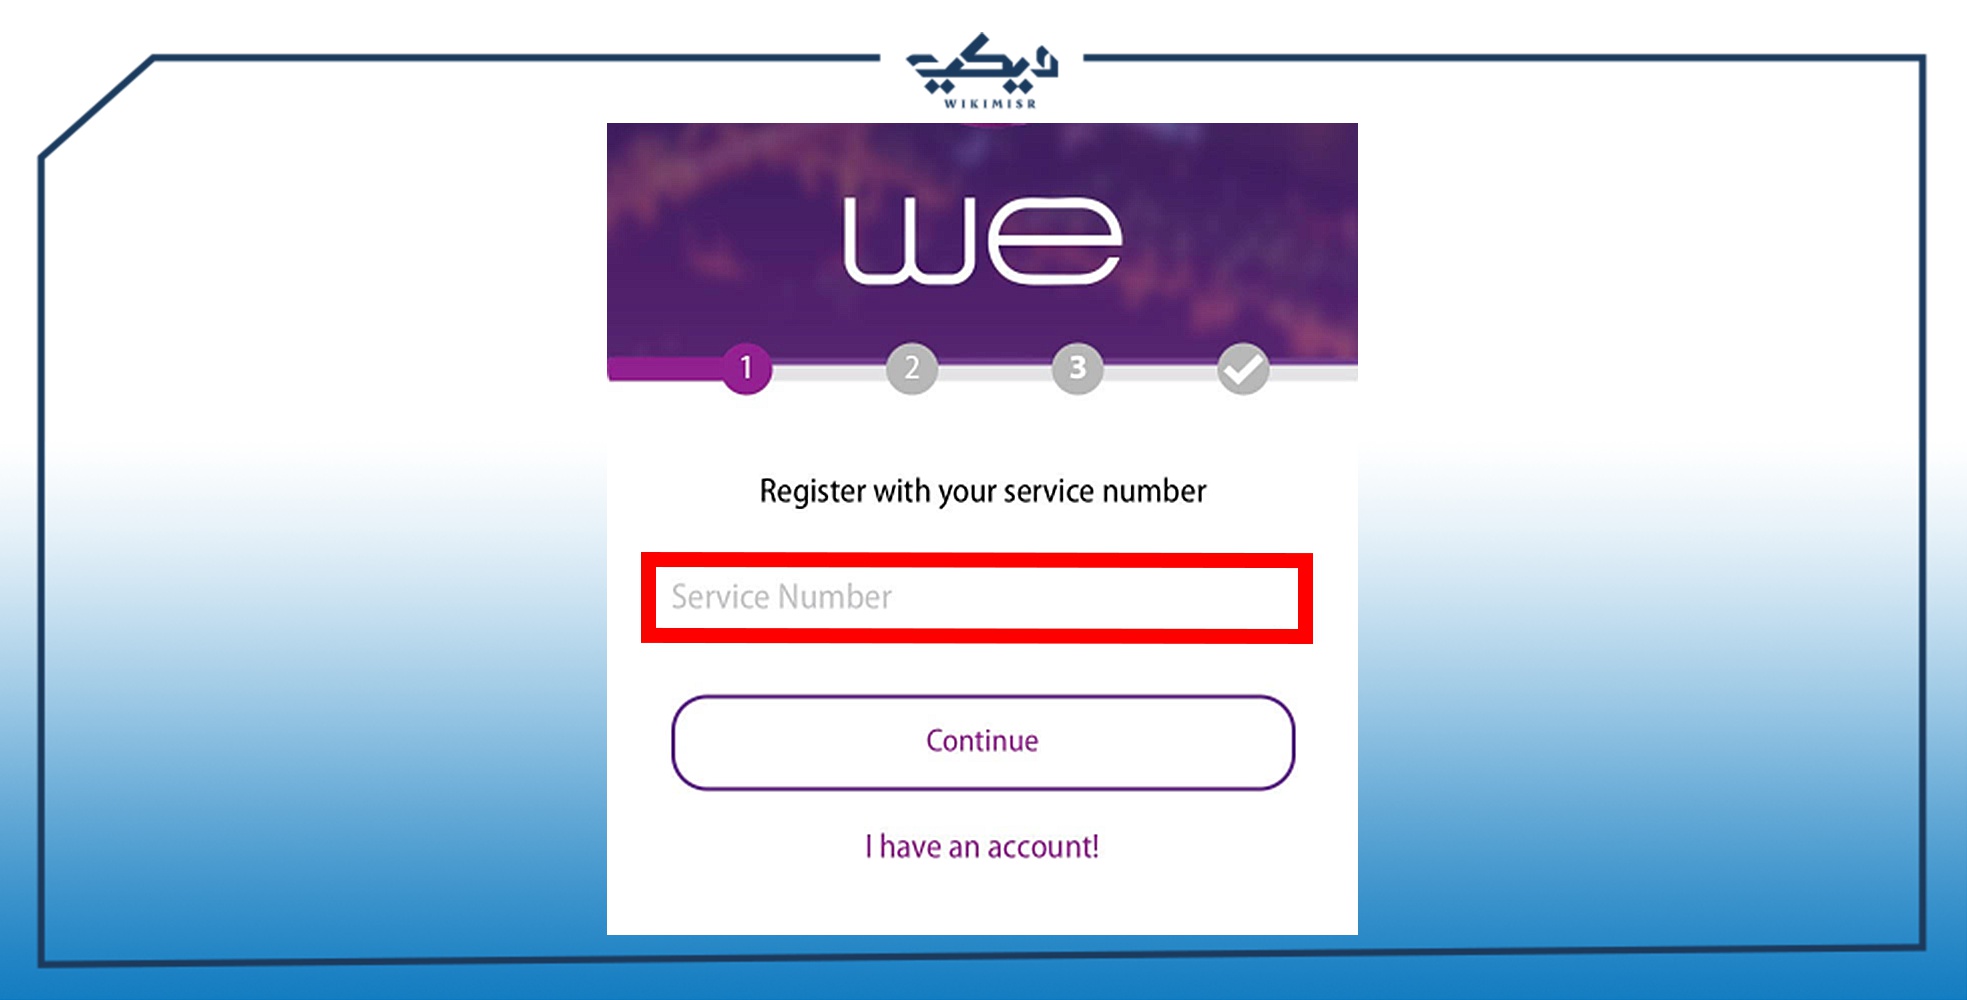 إدخال رقم الخدمة التابع لشركة WE لإنشاء الحساب الجديد